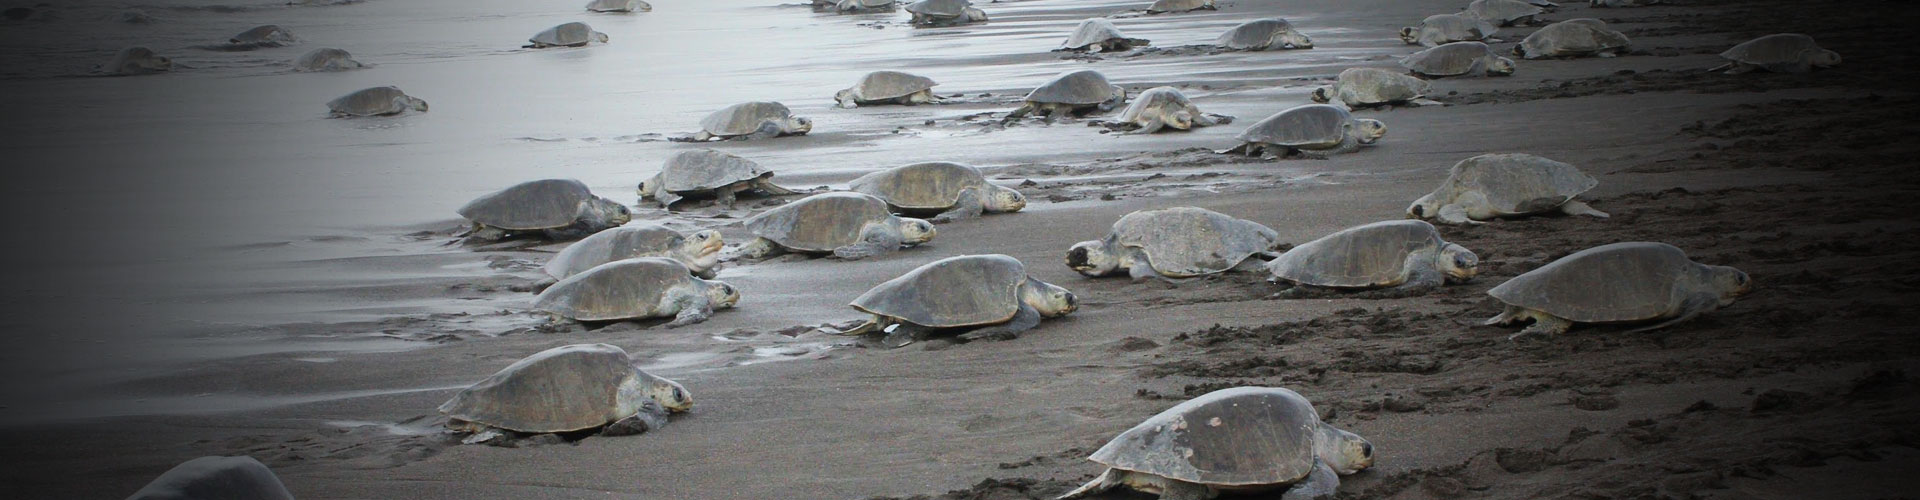 Schutzprogramm für Schildkröten und Faultiere